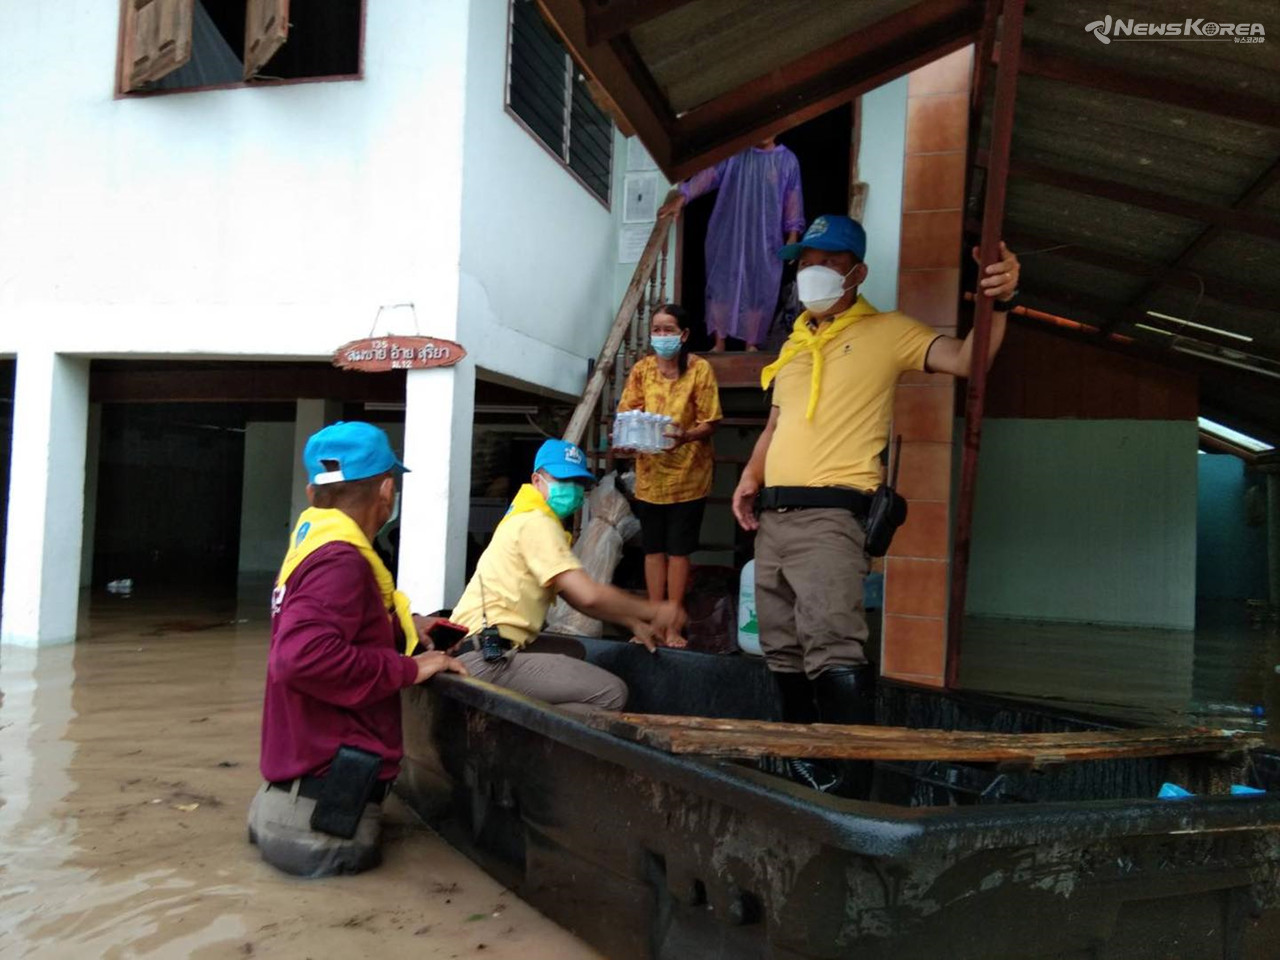 람빵 홍수 피해 현장에 경찰과 관계 기관이 구호품을 전달하고 있다./ 사진 : 태국 경찰